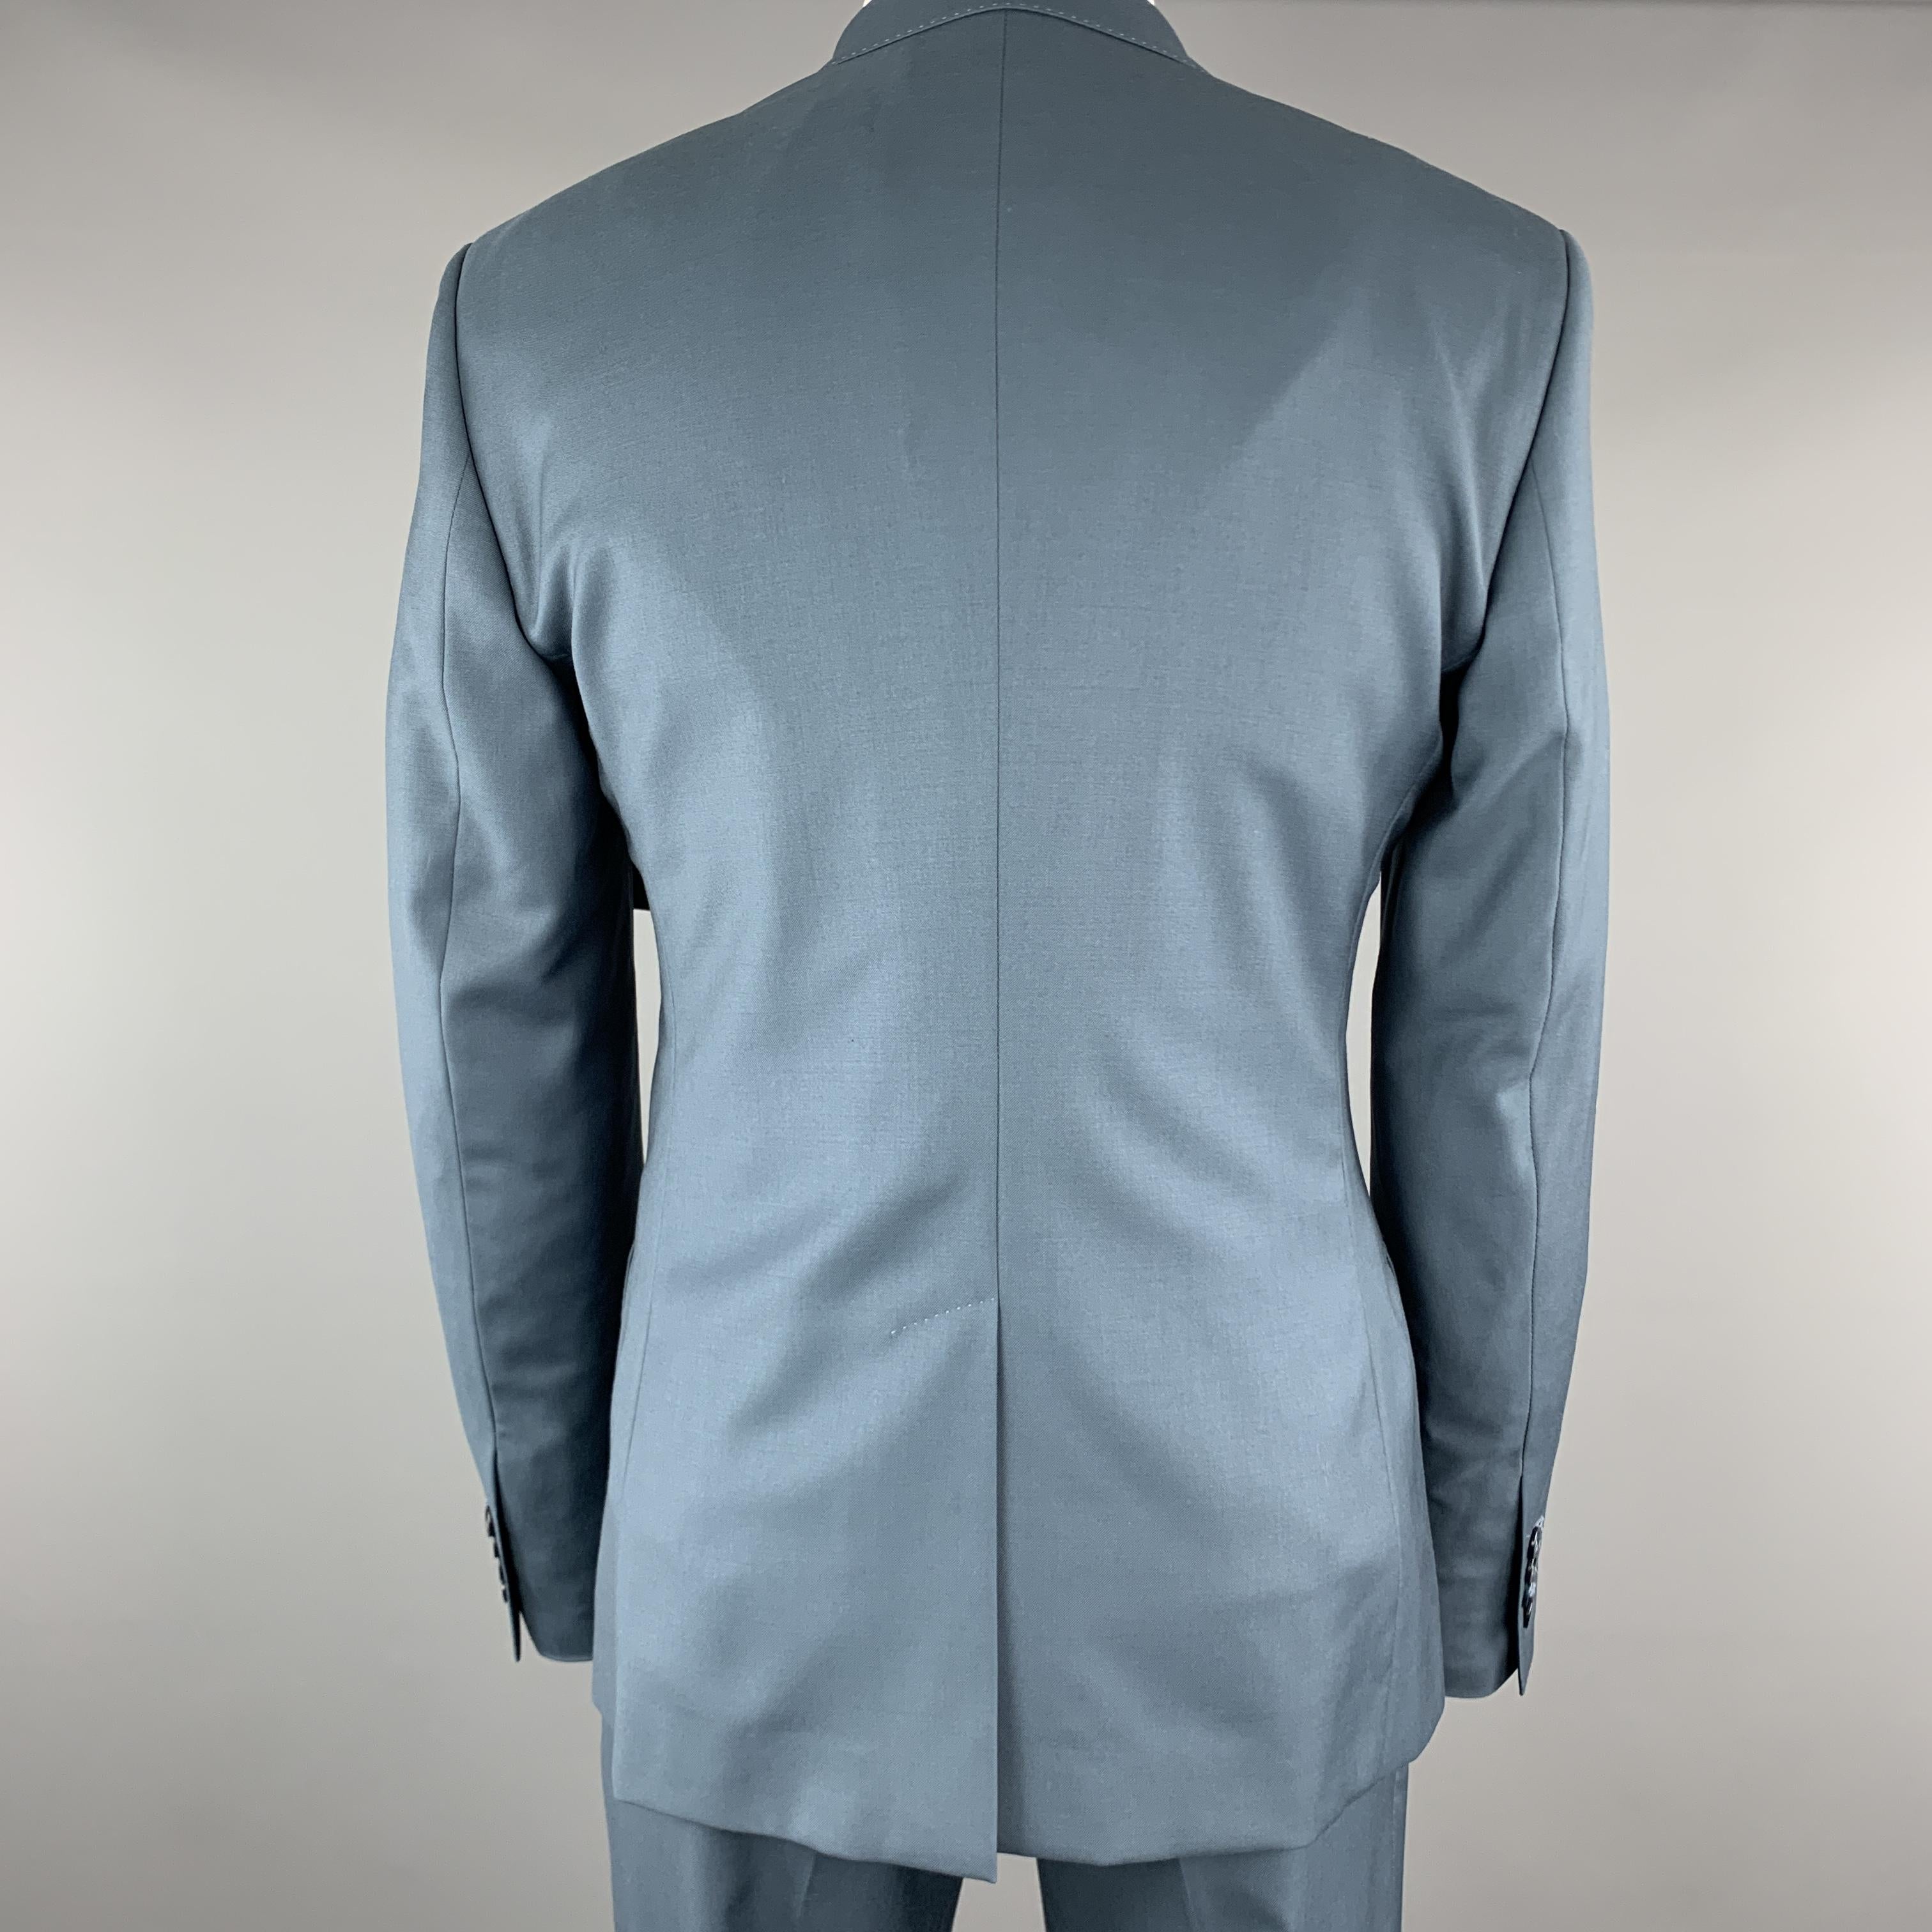 teal blue suit